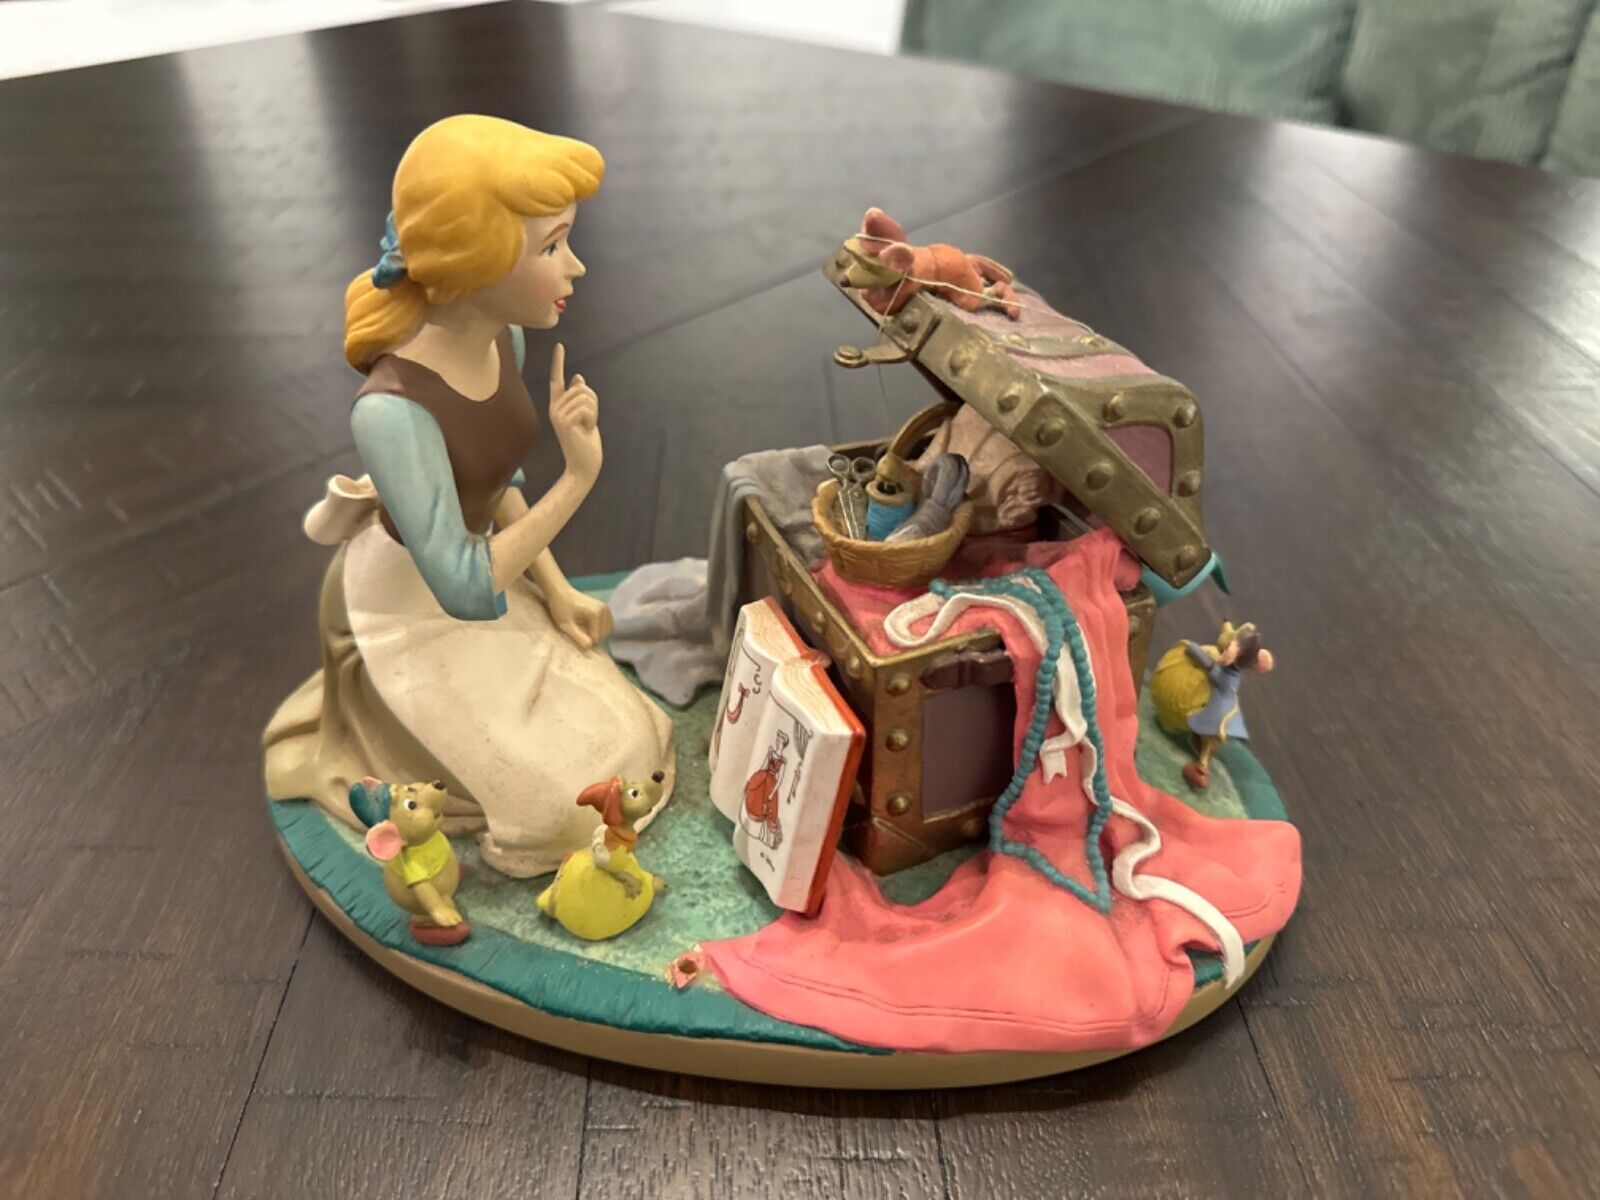 1995 Vintage Cinderella collectibles figurine. 